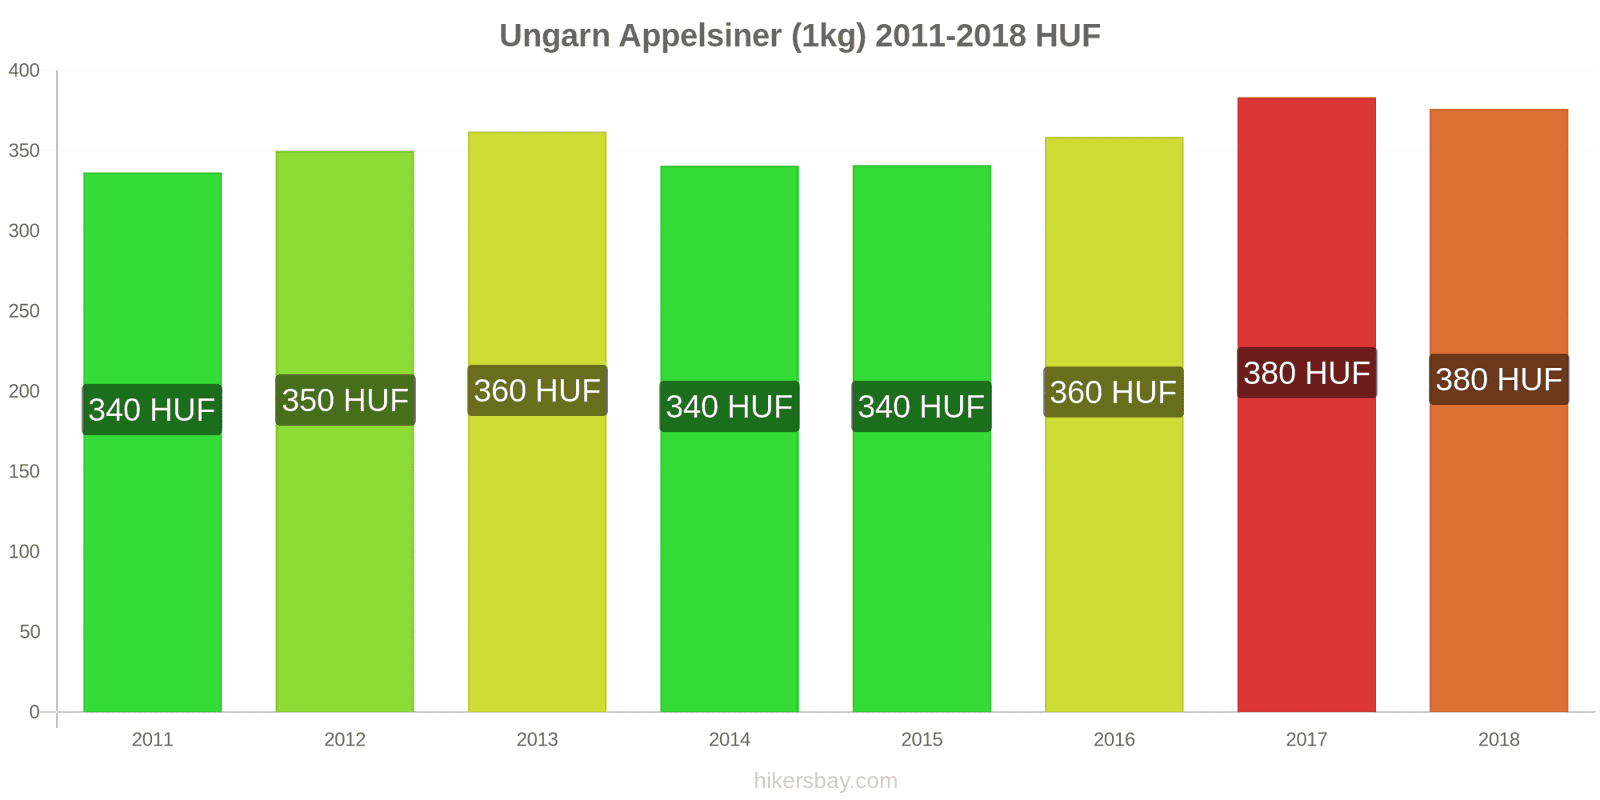 Ungarn prisændringer Appelsiner (1kg) hikersbay.com